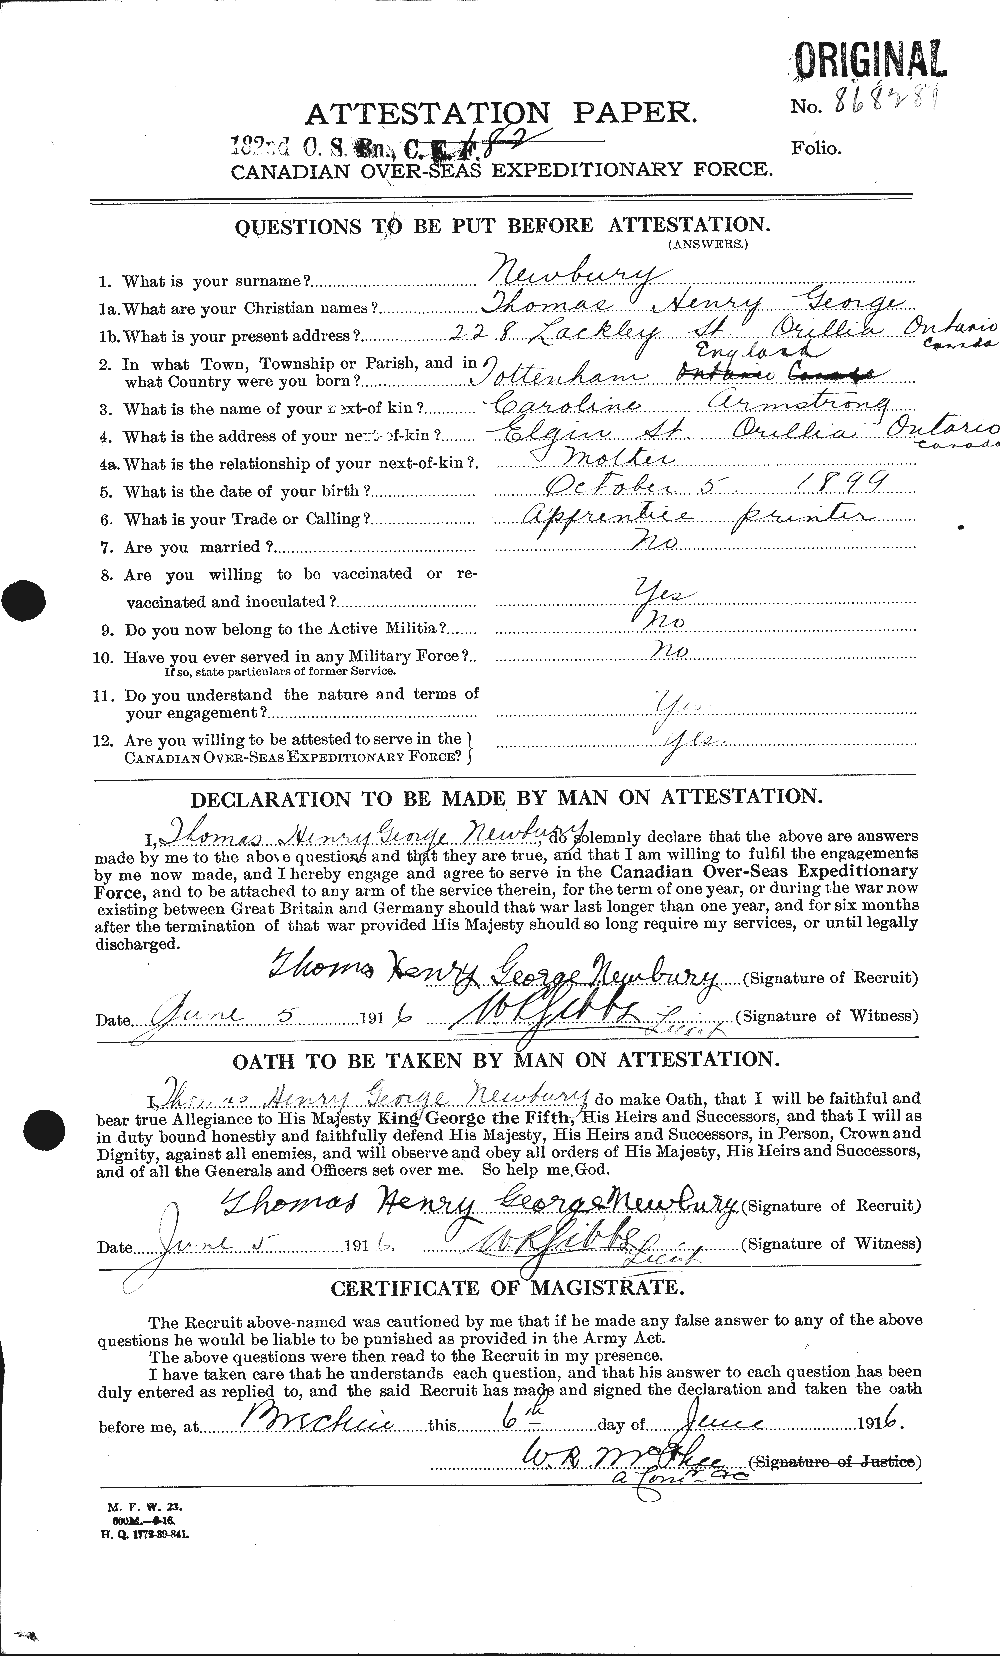 Dossiers du Personnel de la Première Guerre mondiale - CEC 544117a